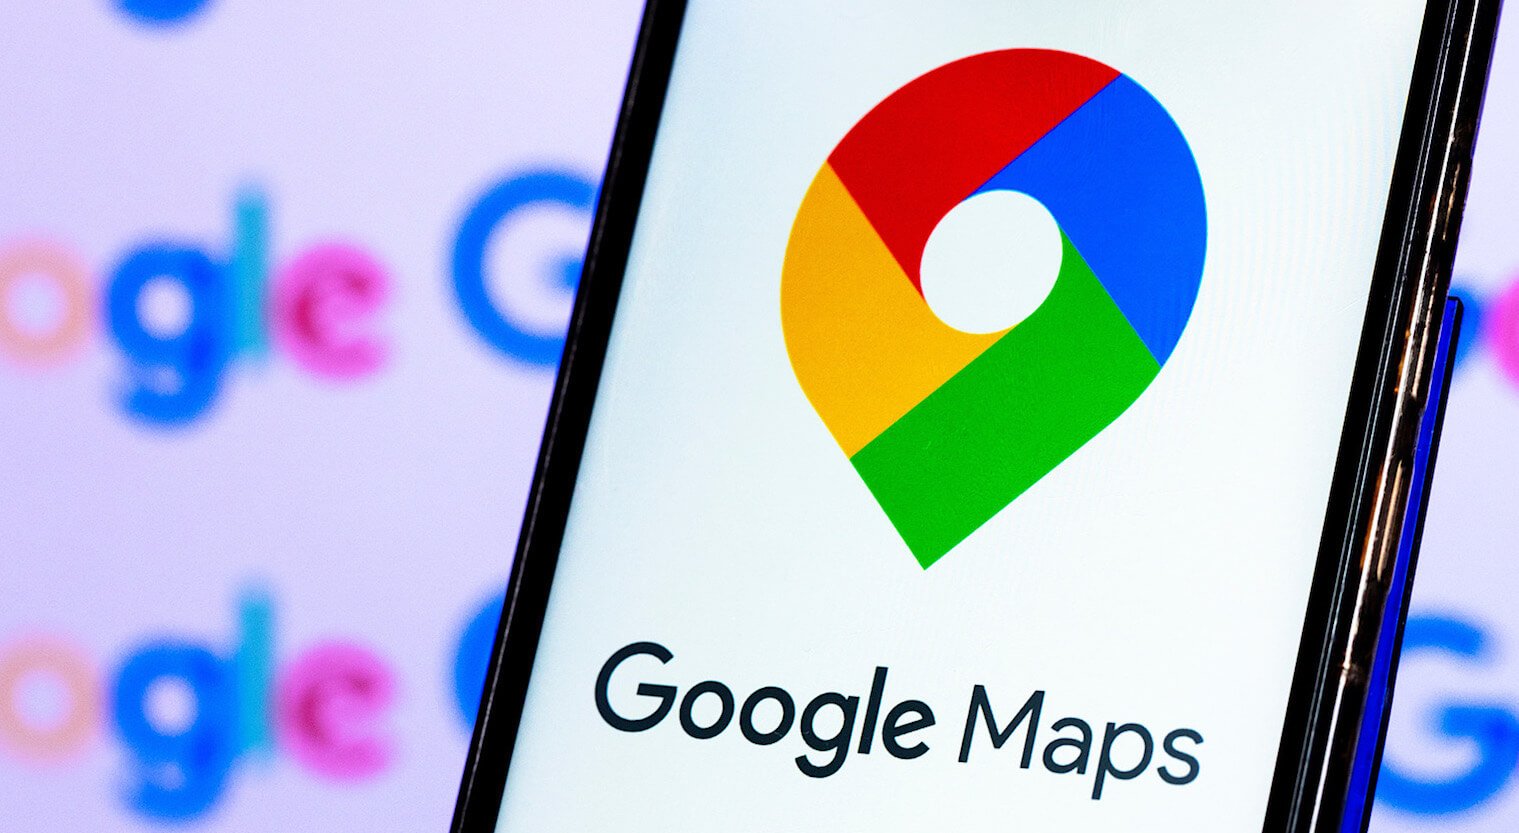 उपयोगकर्ता अनुभव को बेहतर बनाने के लिए Google ने मानचित्र में तीन नई सुविधाएँ कीं पेश